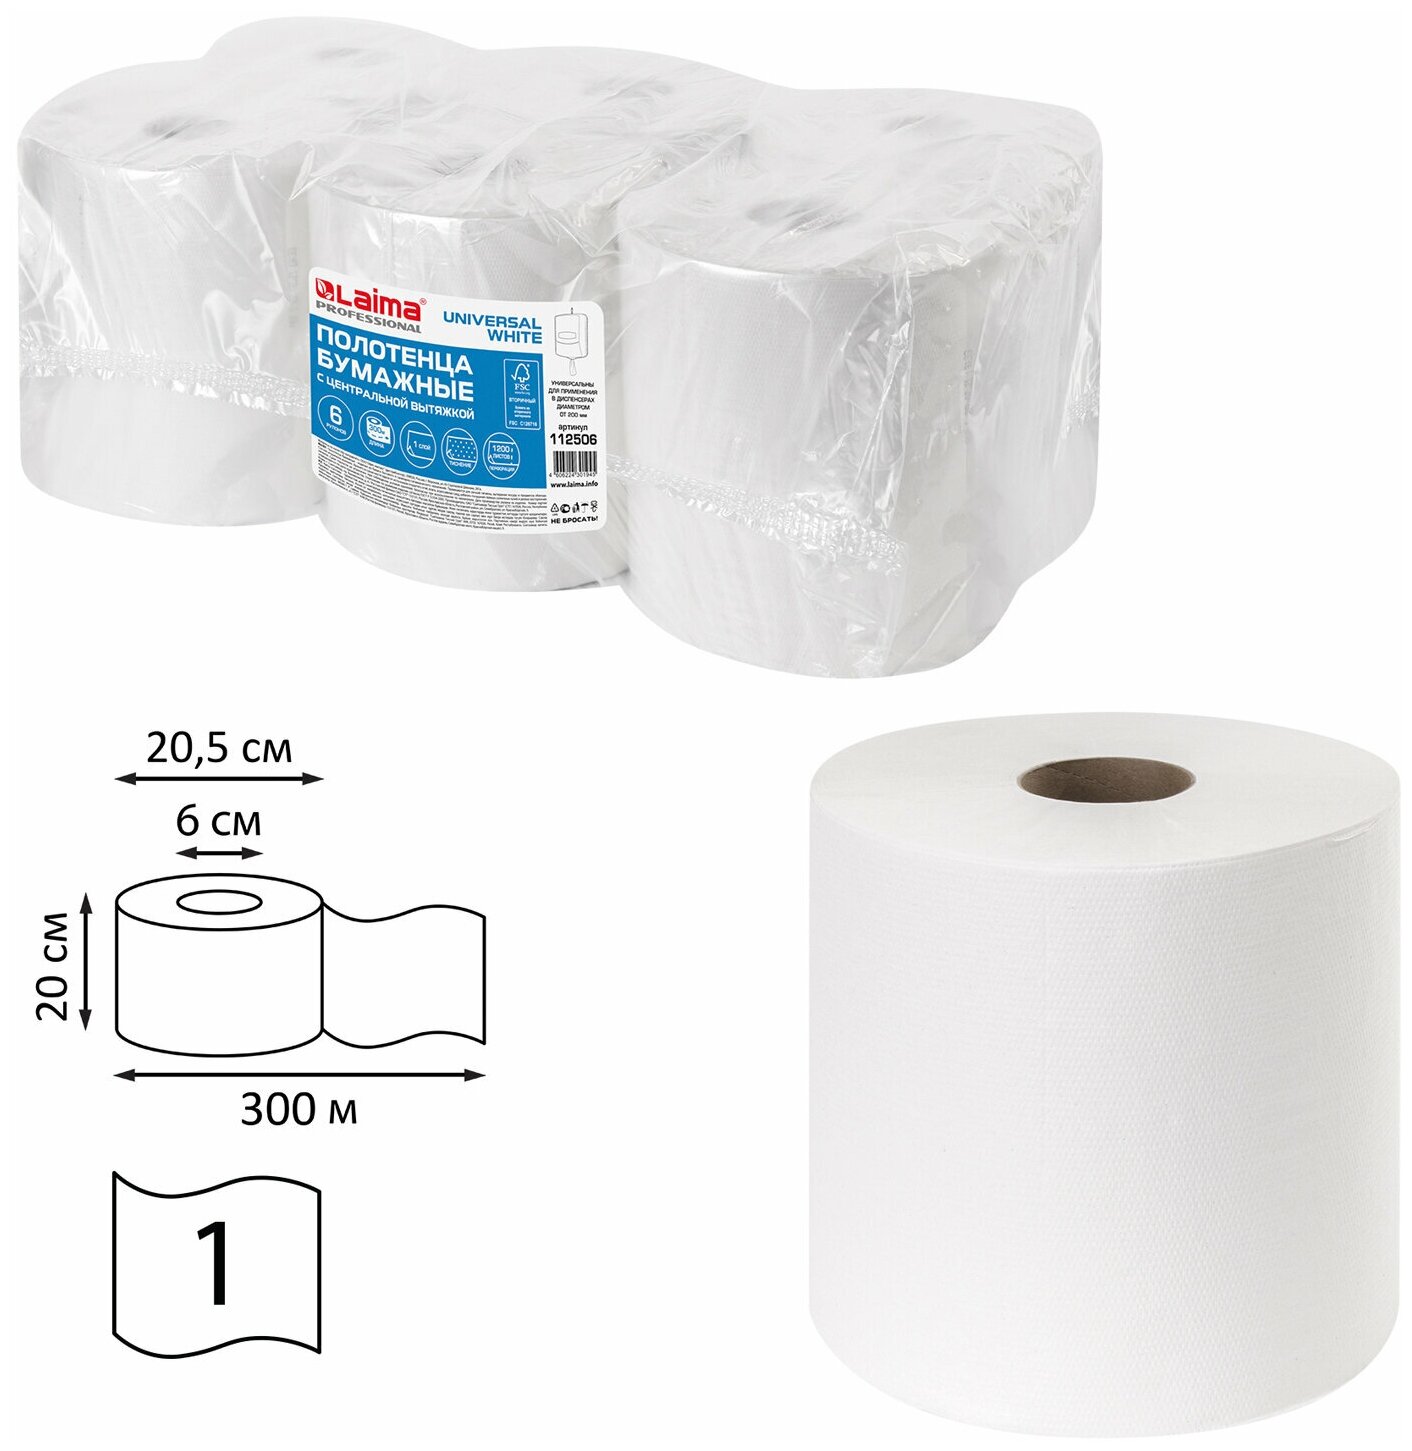 Полотенца бумажные Лайма с центральной вытяжкой, 300 м, (Система M2), Universal white, 1-слойные, белые, 6 рулонов